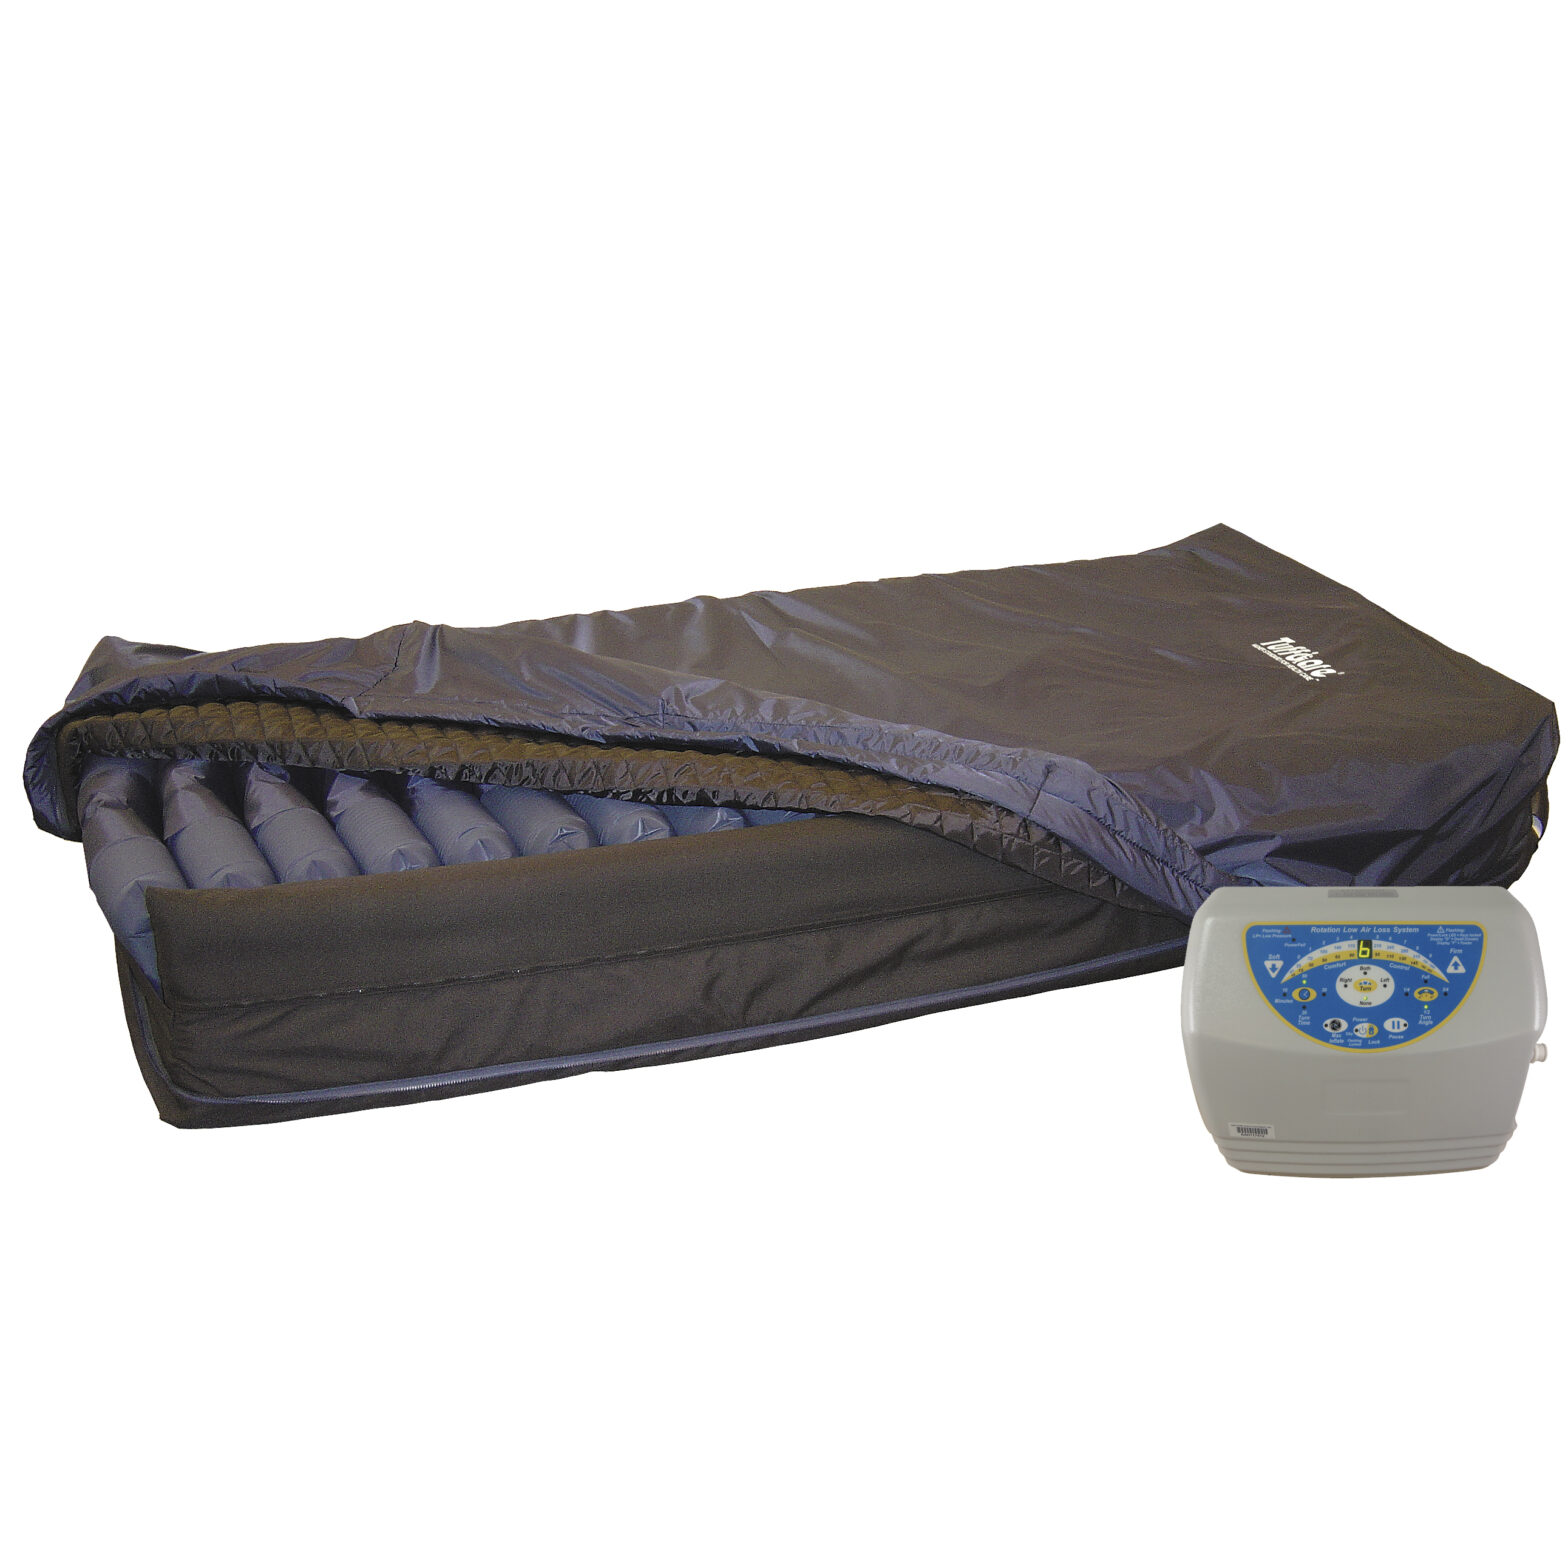 T5000 Bariatric Bed Mattress